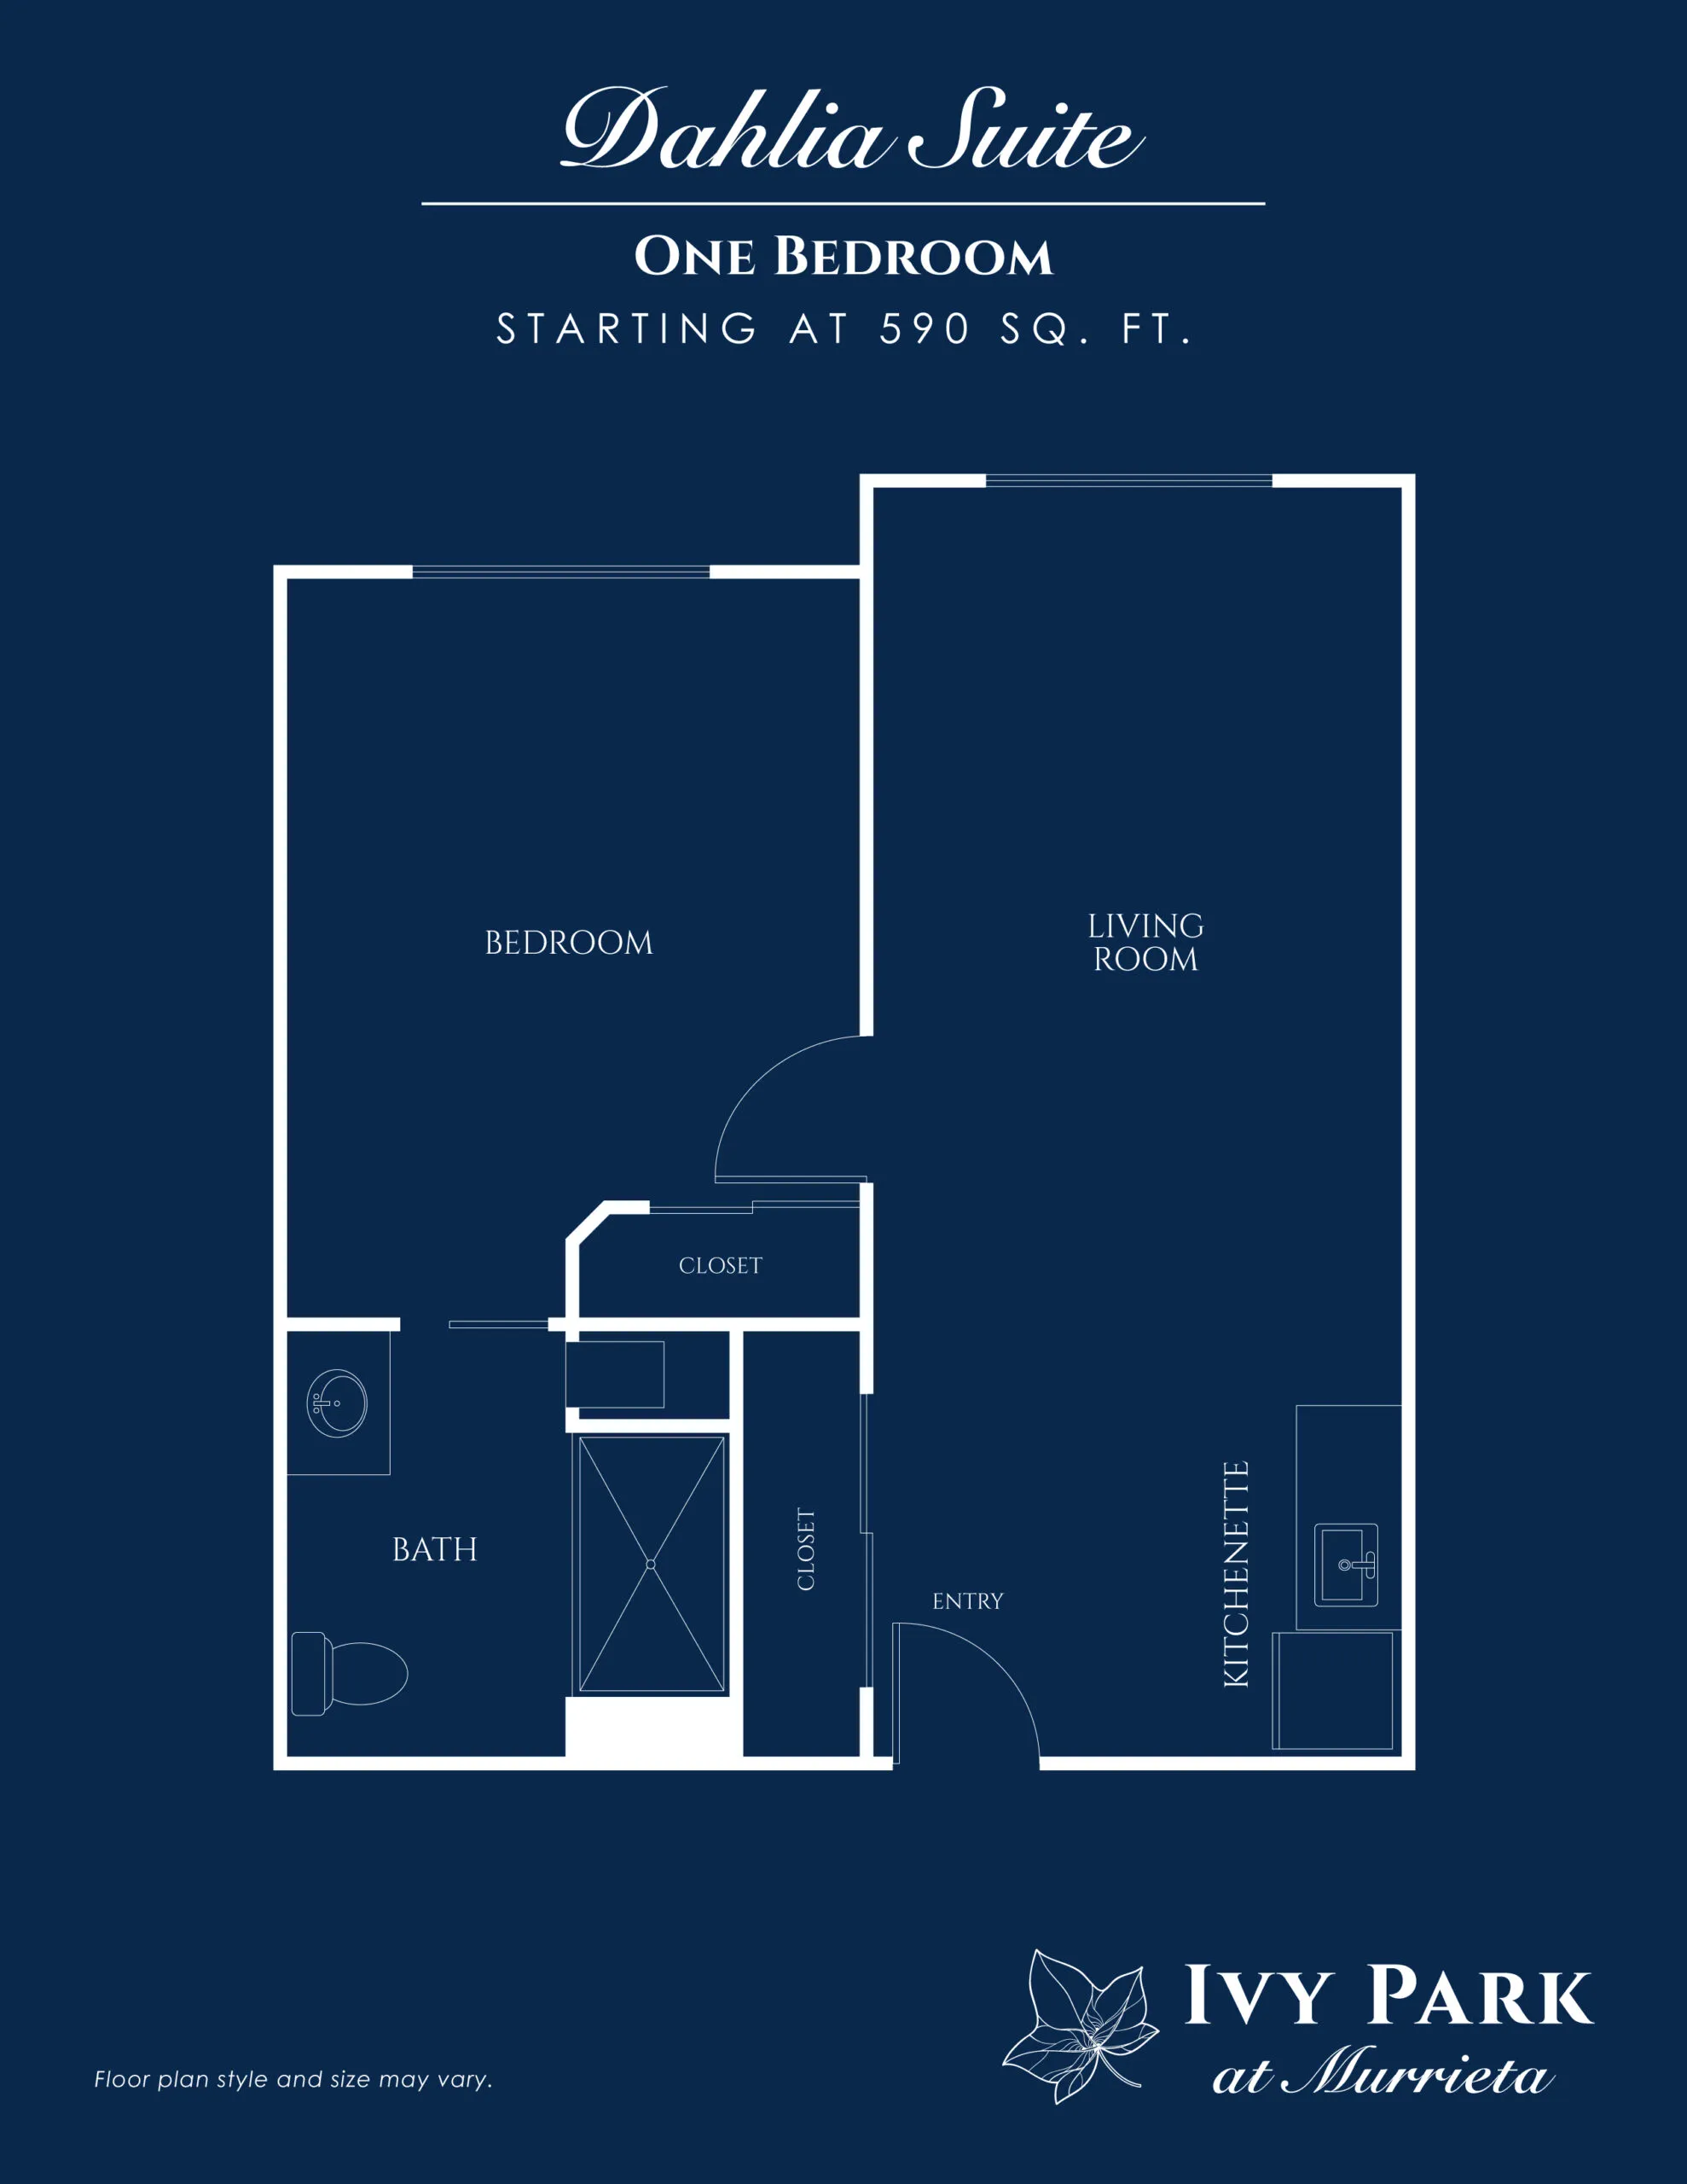 Dahlia Suite floor plan